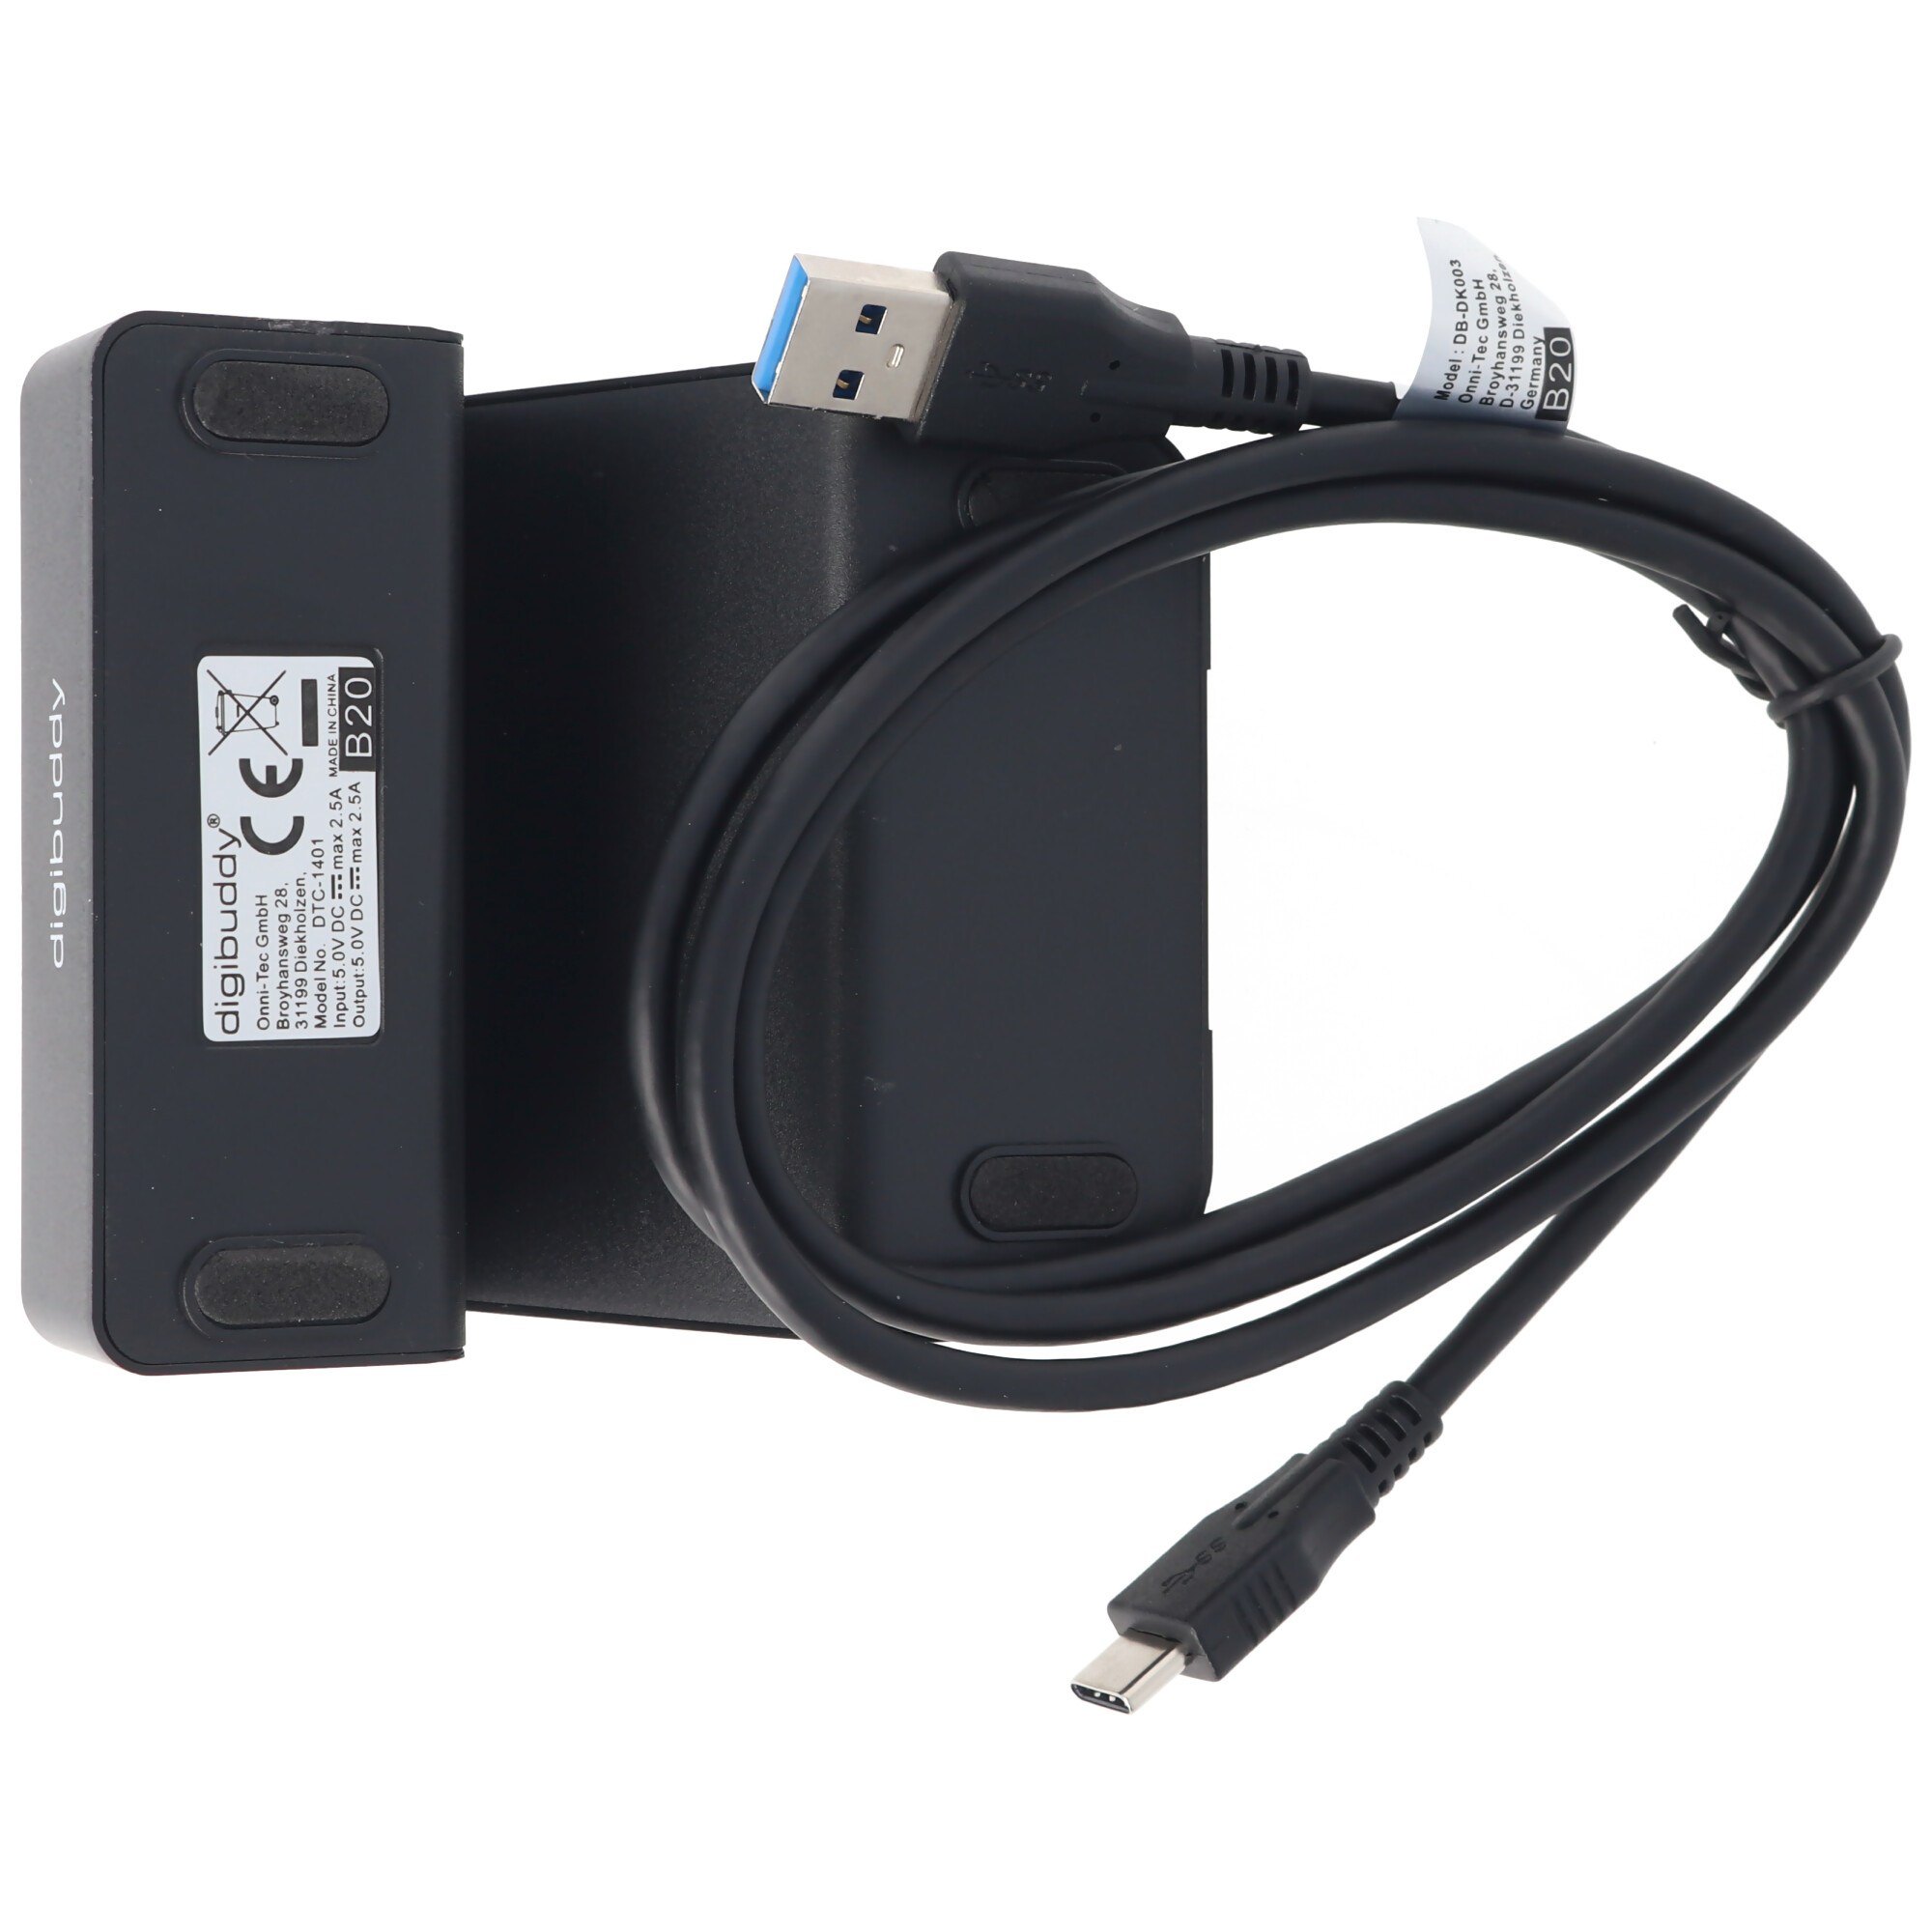 USB Dockingstation mit USB-C 3.1 (Type C) variabler Connector inklusive USB 3.0 Kabel zum Laden und Synchronisieren